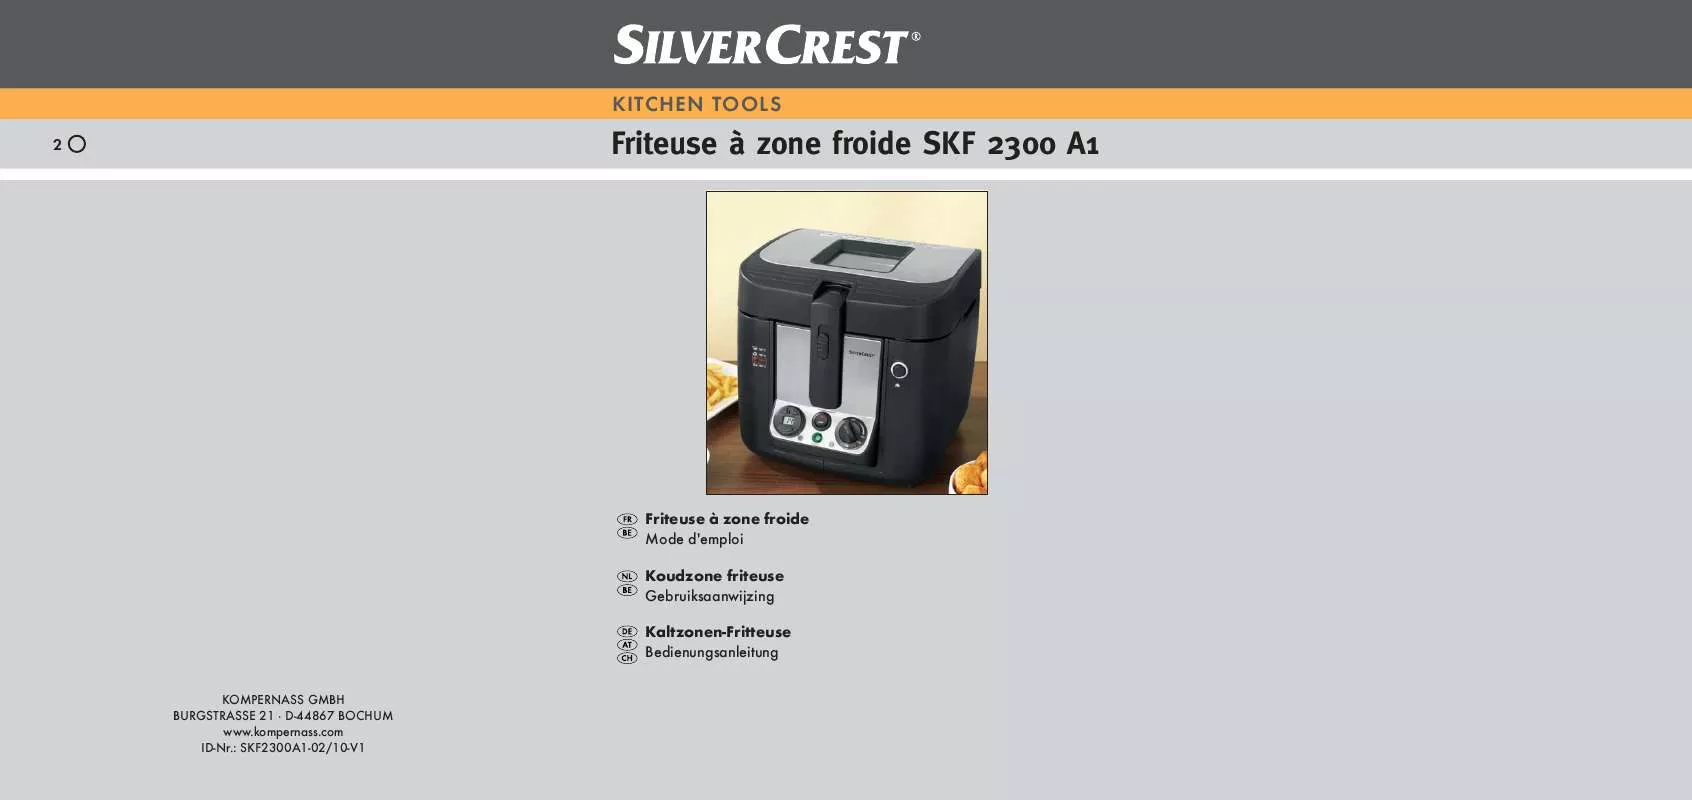 Mode d'emploi SILVERCREST SKF 2300 A1 COOL-ZONE DEEP FAT FRYER